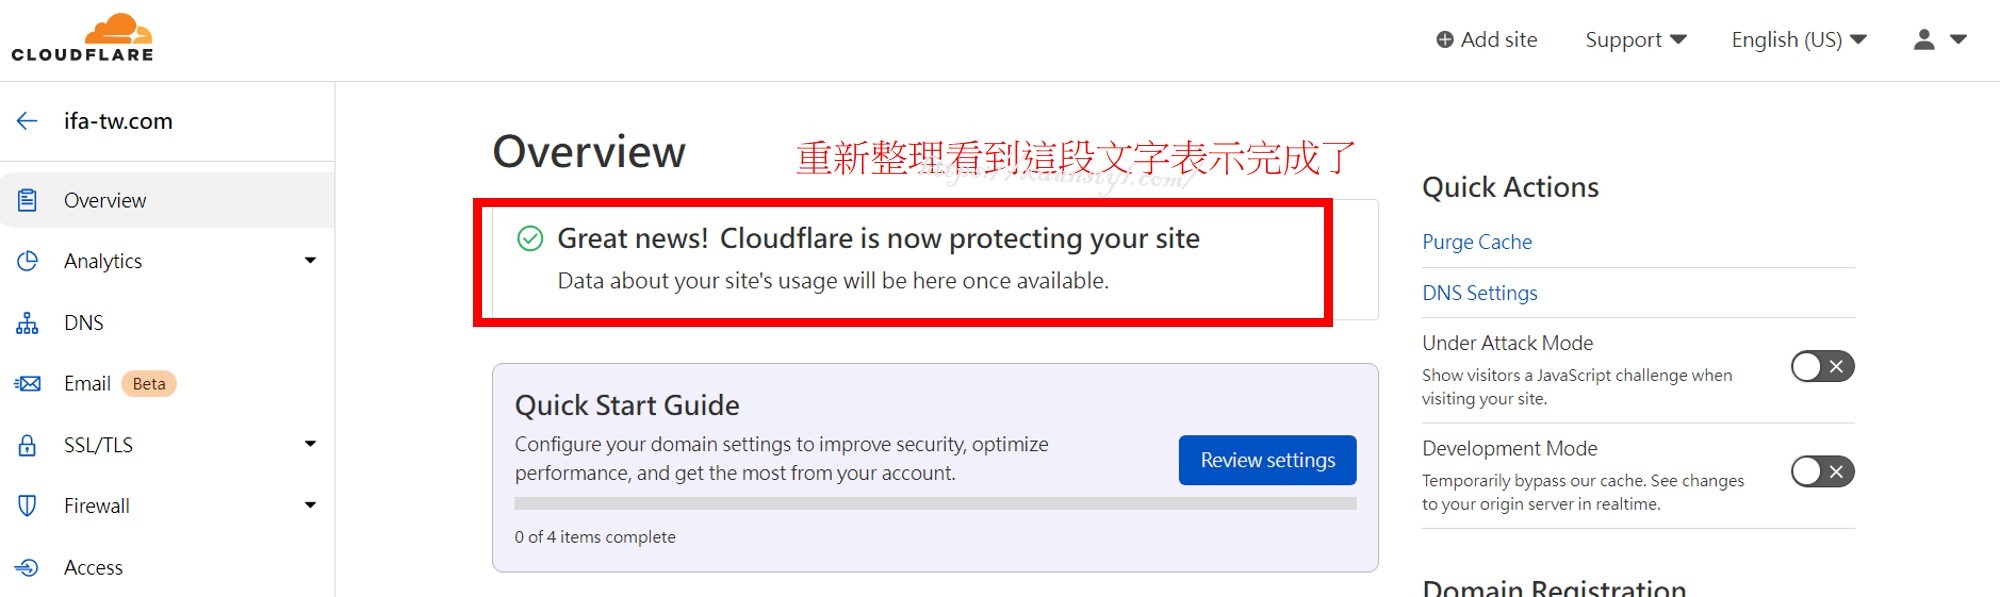 設定Cloudflare代管DNS：出現這段文字表是Cloudflare的設定都完成了